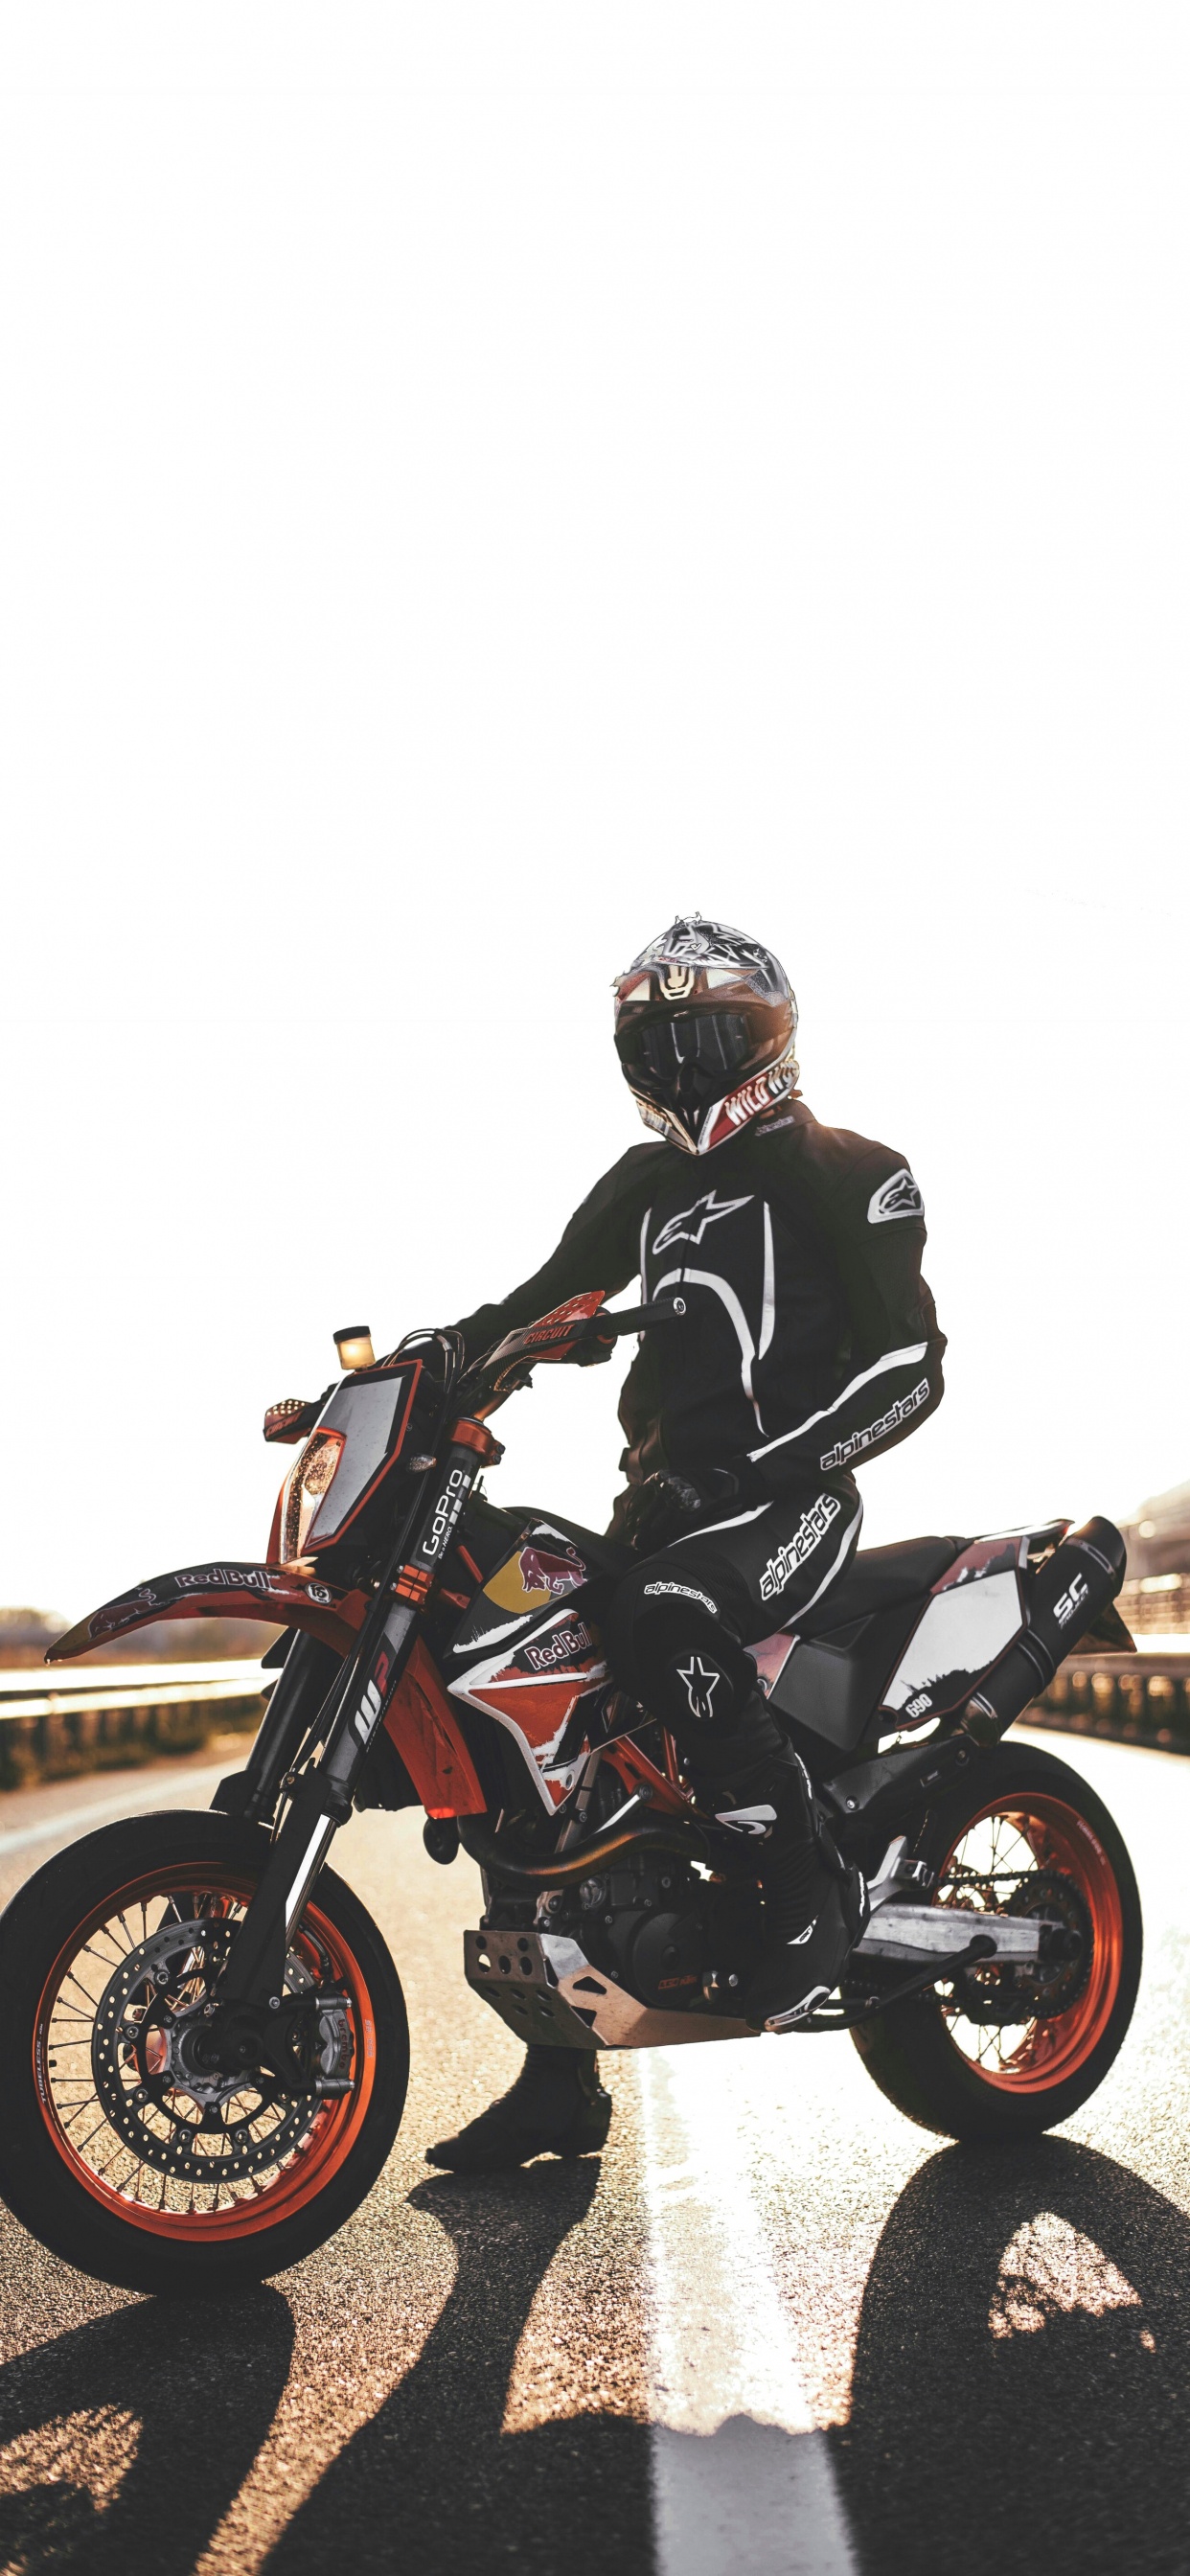 摩托车头盔, 滑胎, 摩托车越野赛, 摩托车赛车, 摩托车手 壁纸 1242x2688 允许